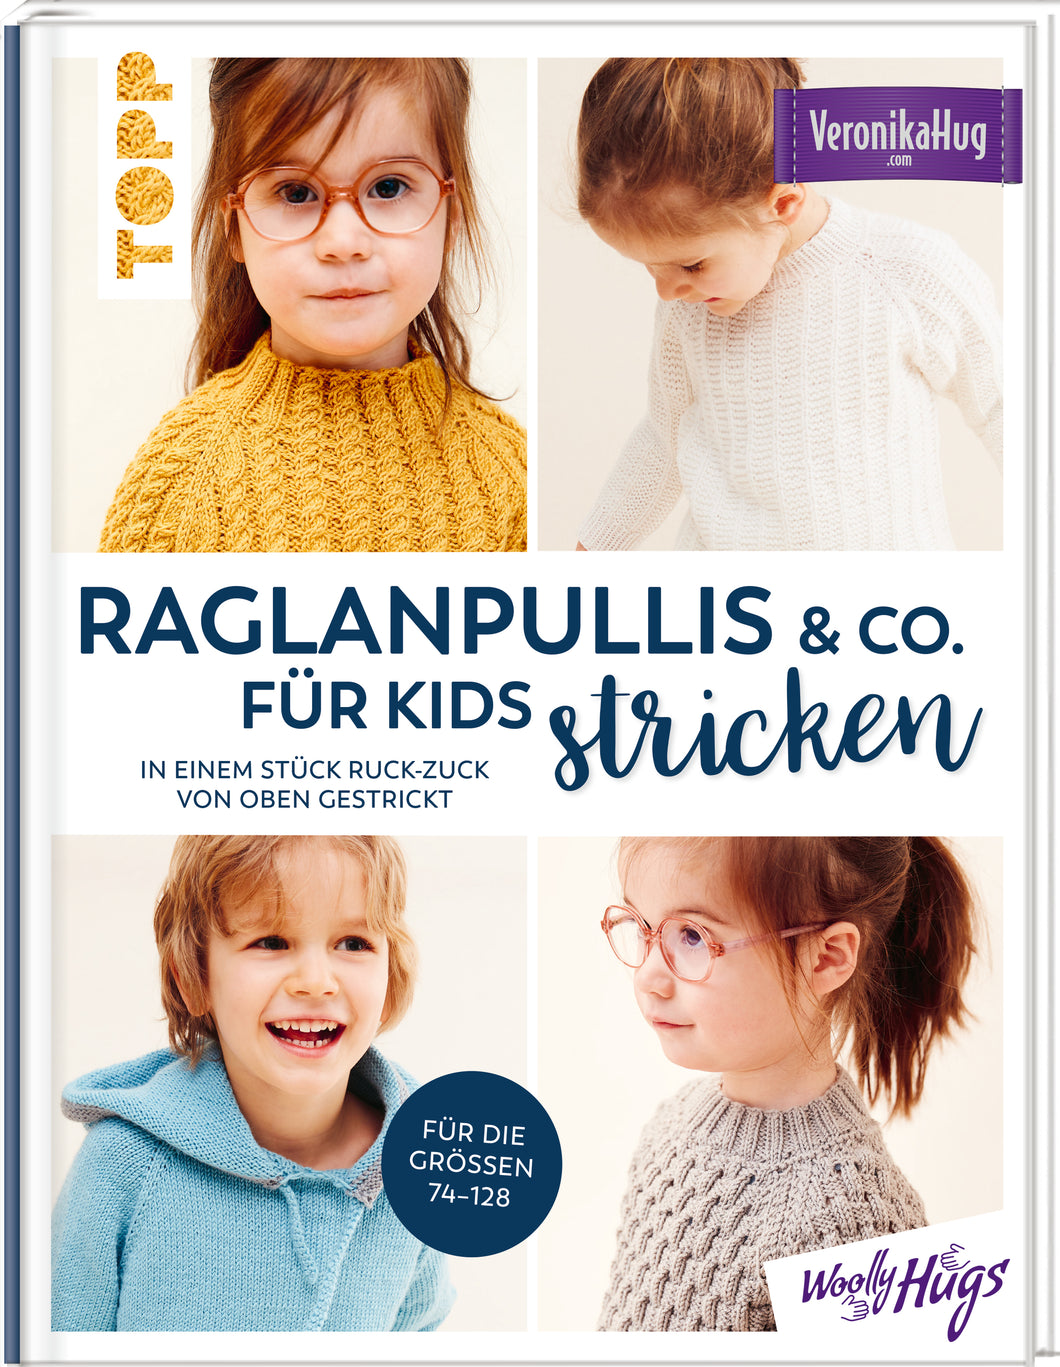 Raglanpullis & Co. für Kids stricken - Veronika Hug